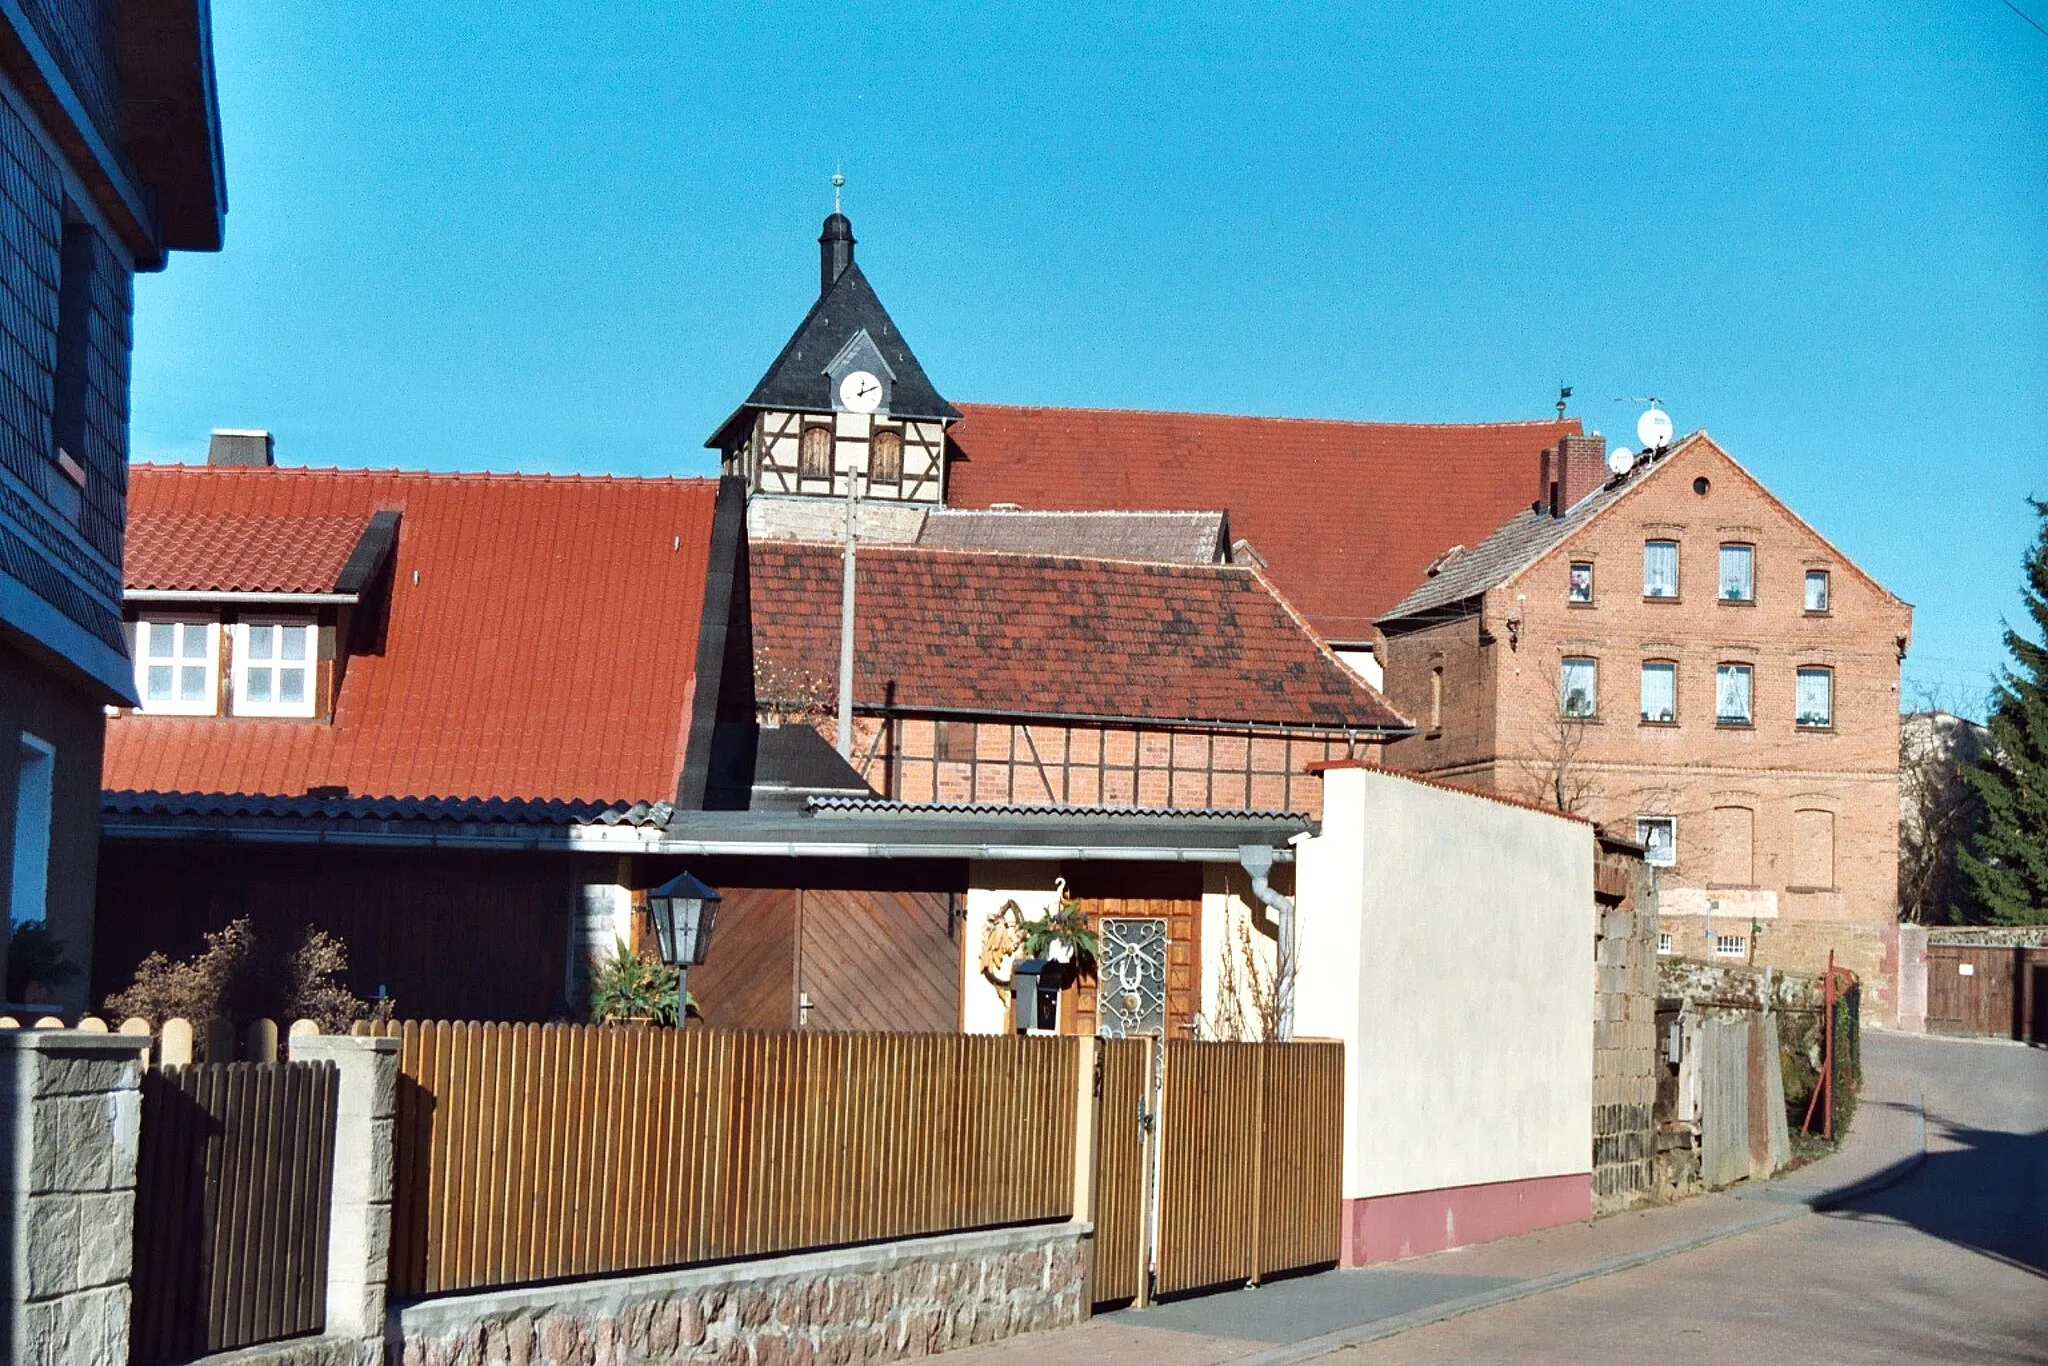 Photo showing: Alterode (Arnstein), villagescape